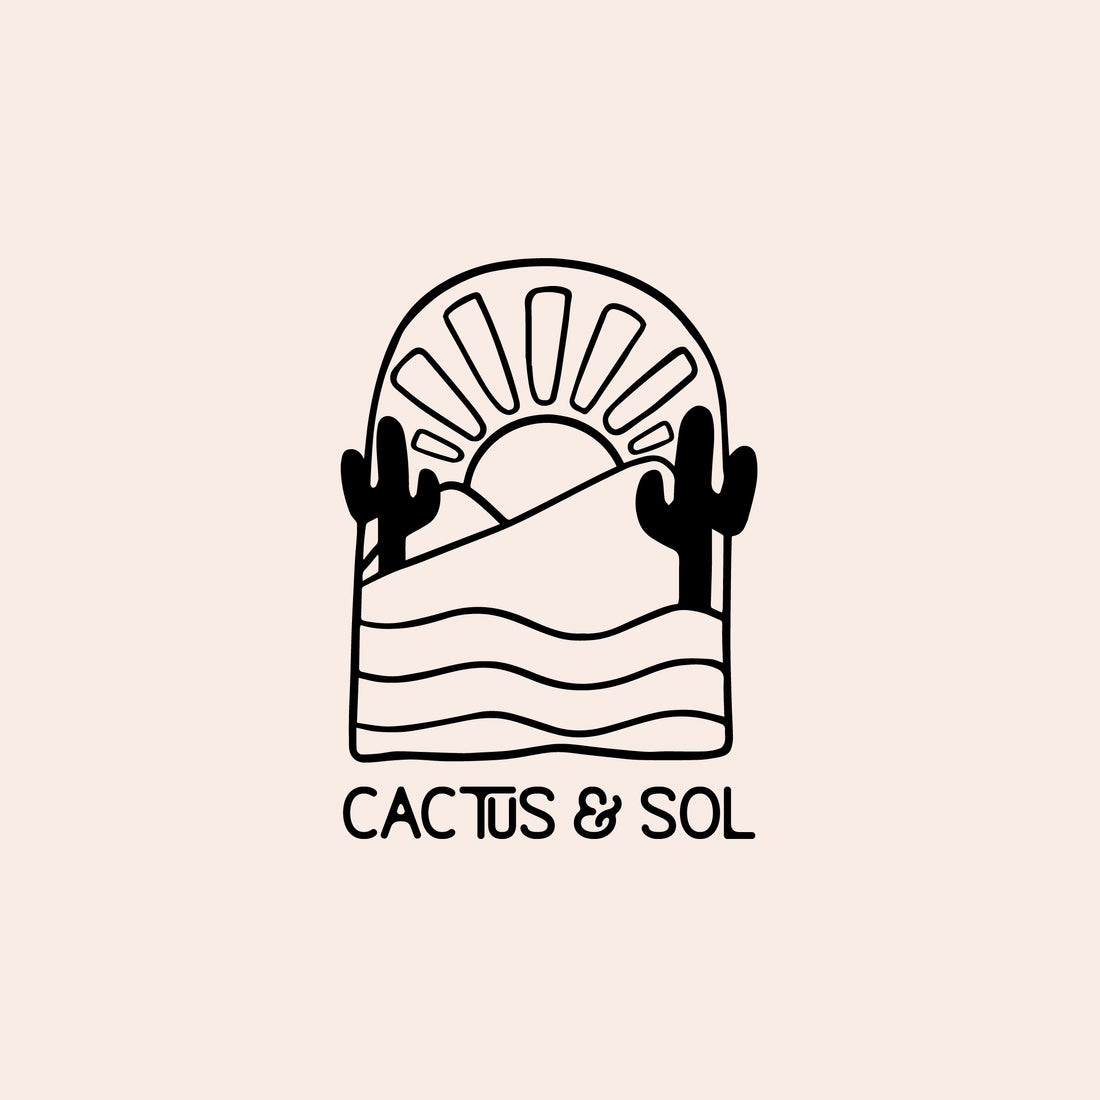 Cactus & Sol | Brand Identity